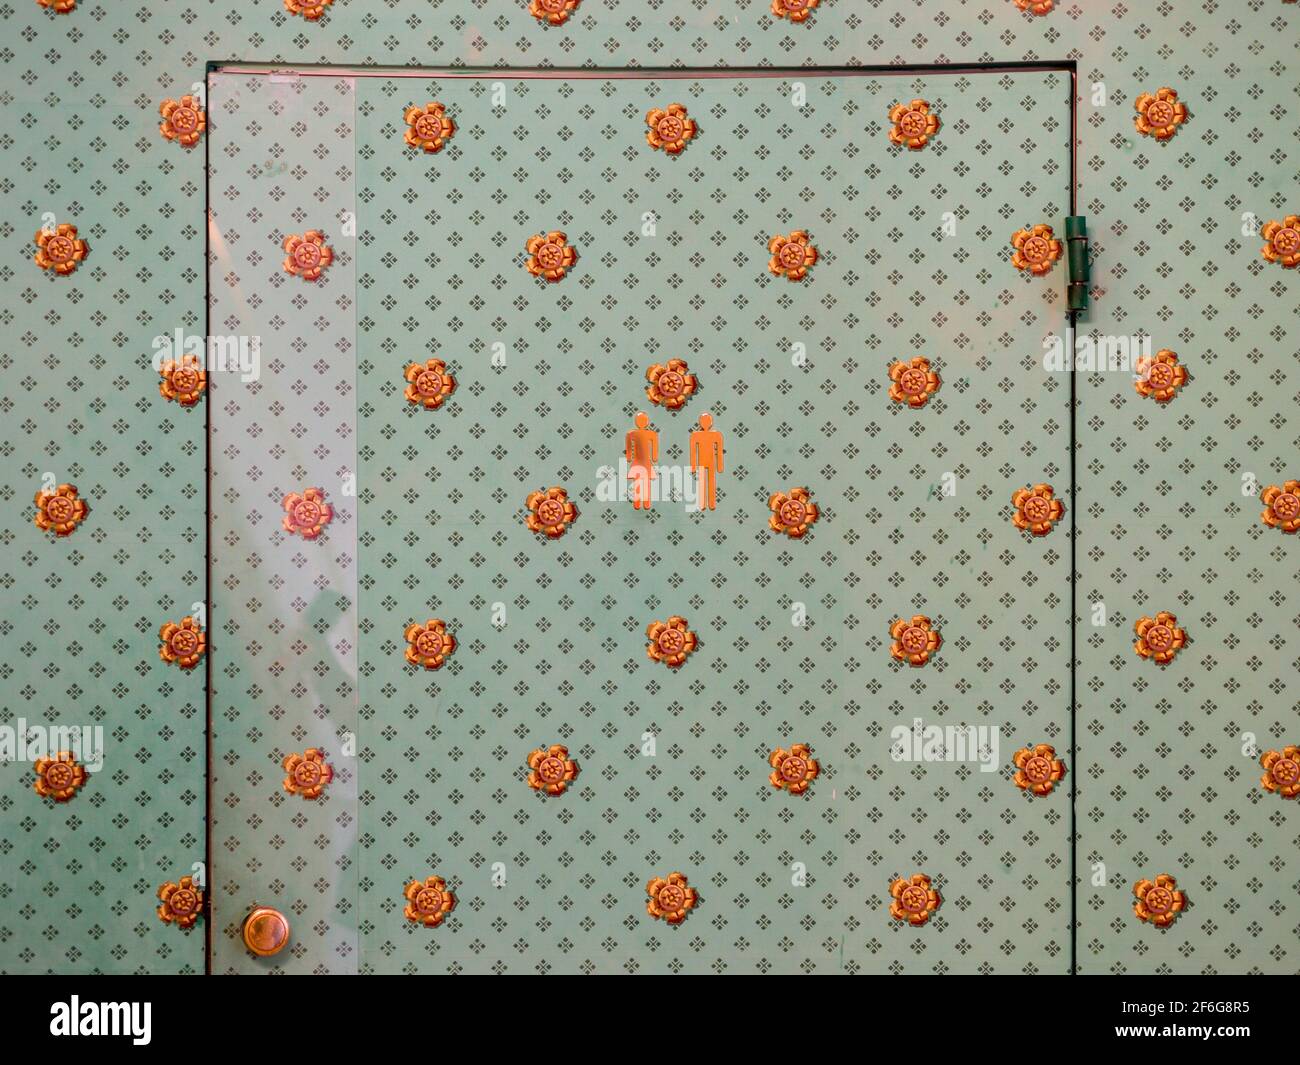 Versteckter Toiletteneingang: Die Tür für eine Unisex-Toilette versteckt hinter Vintage-Tapeten in diesem ehrwürdigen Museum. Farblich abgestimmte Aufkleber kennzeichnen die Tür diskret. Stockfoto